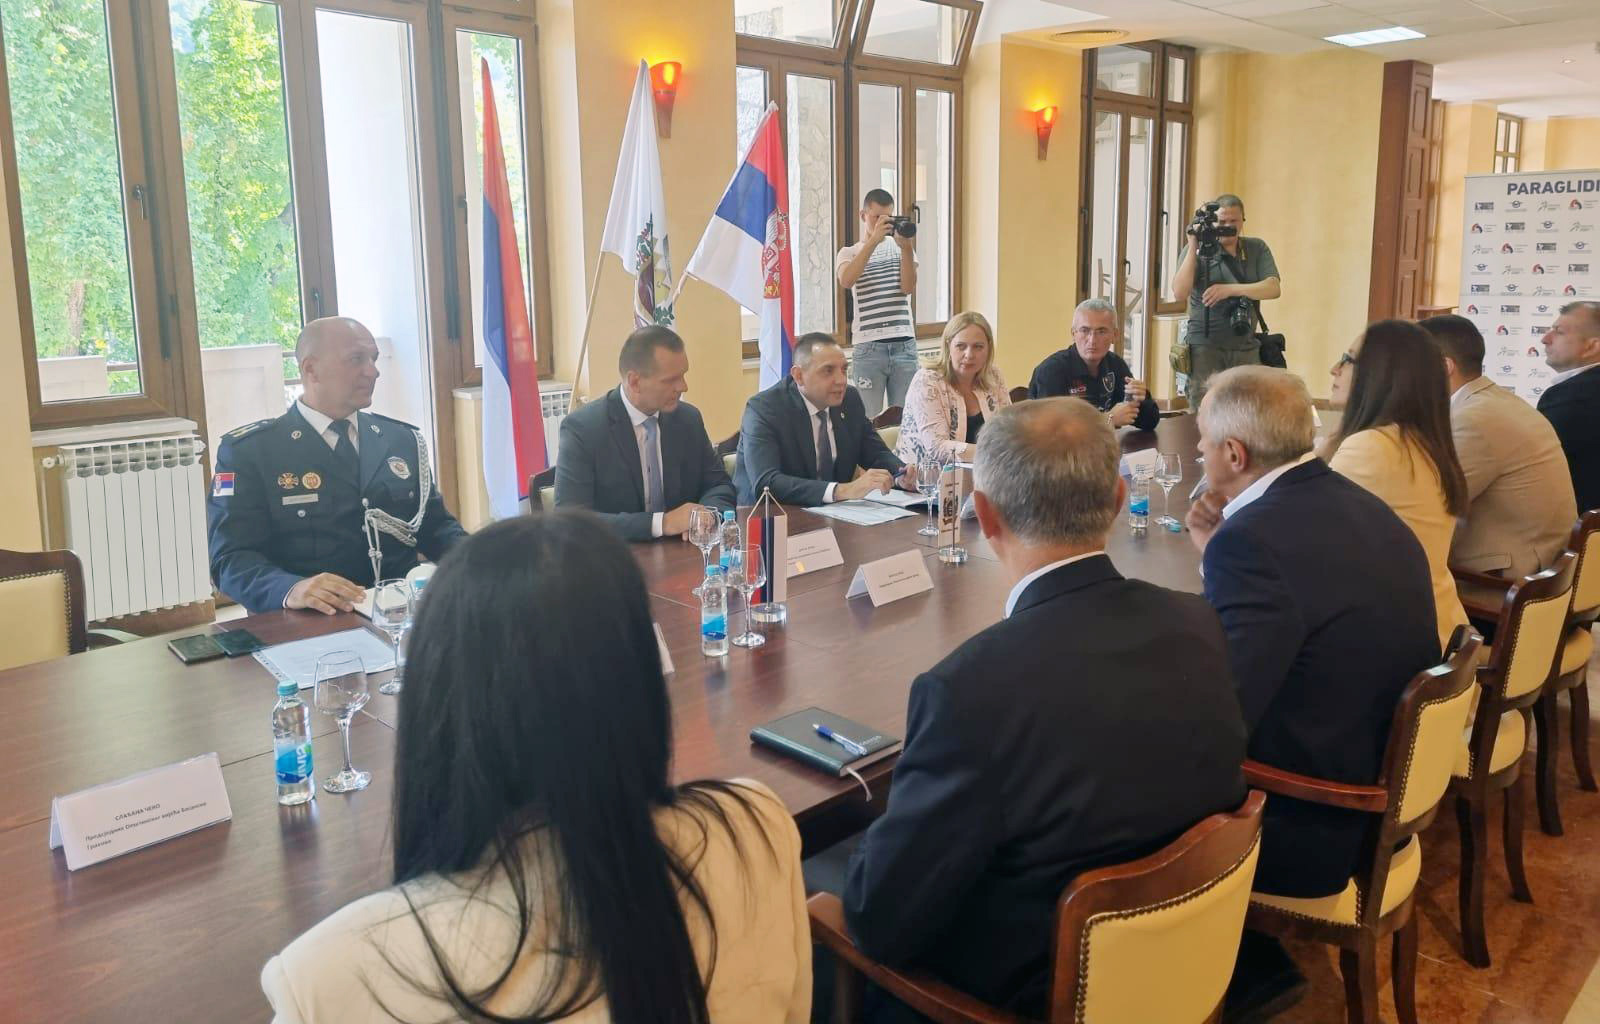 Ministar Vulin: Dok predsednik Aleksandar Vučić vodi Srbiju pomoć Srbima neće izostati